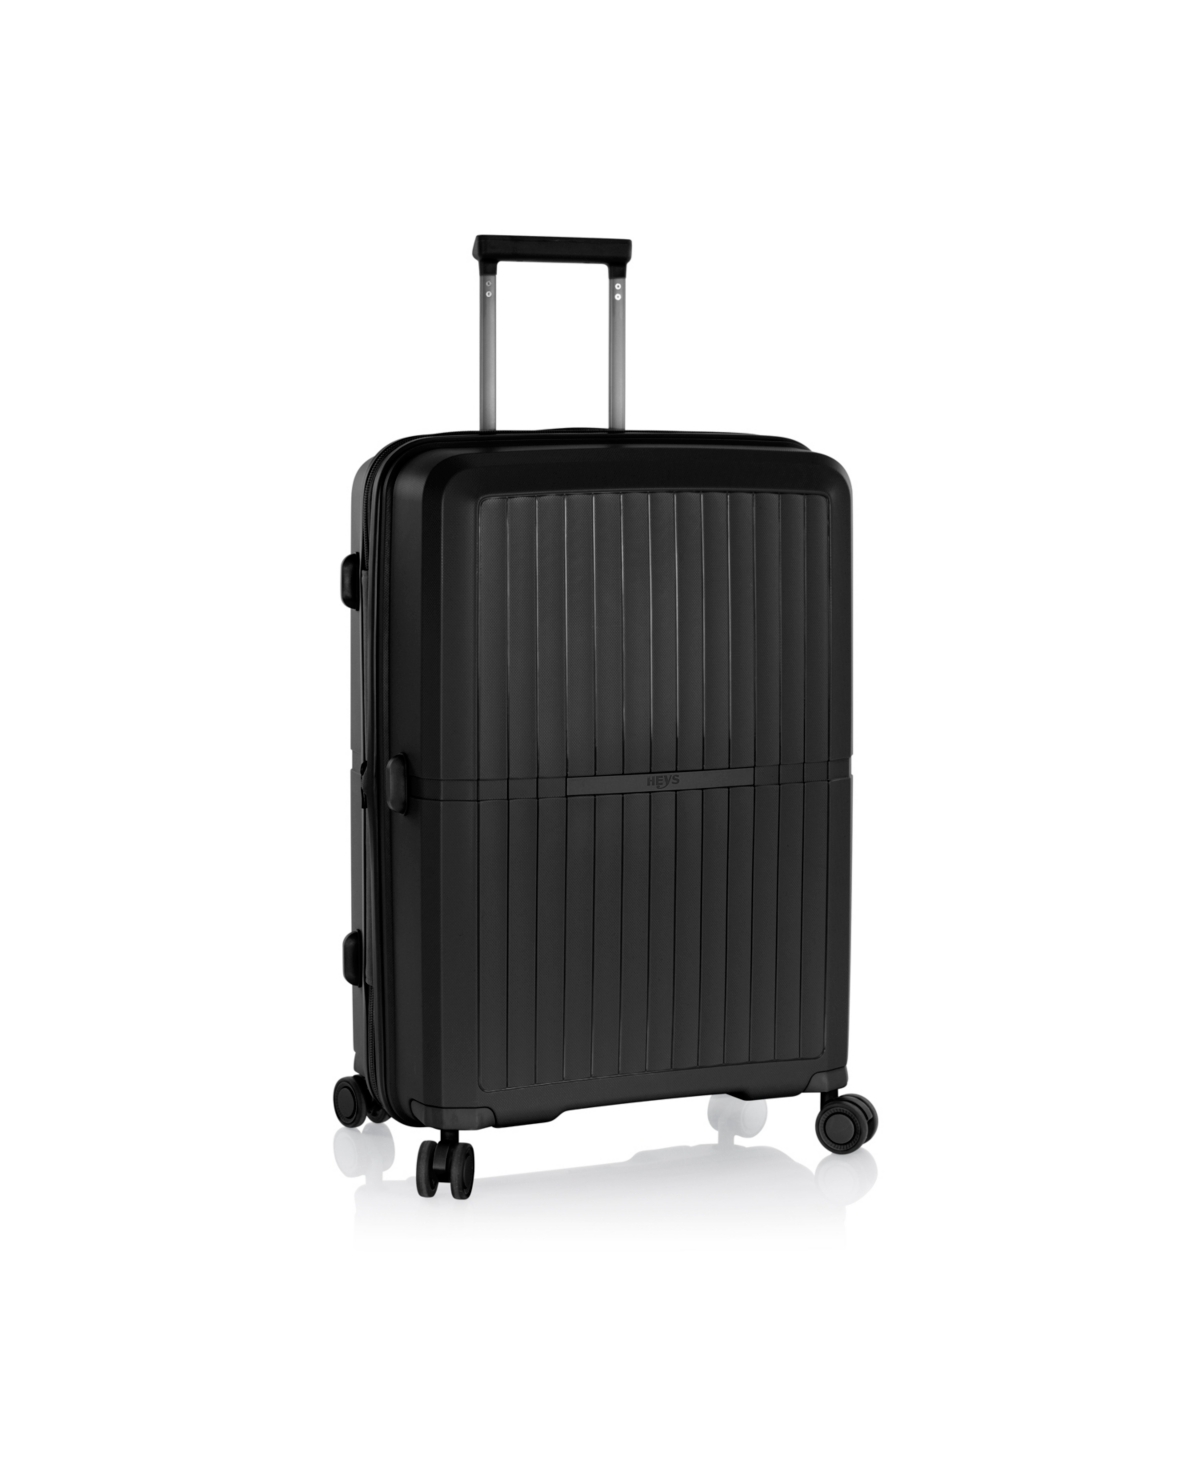 Heys Airlite 26" Hardside Spinner Luggage In Black